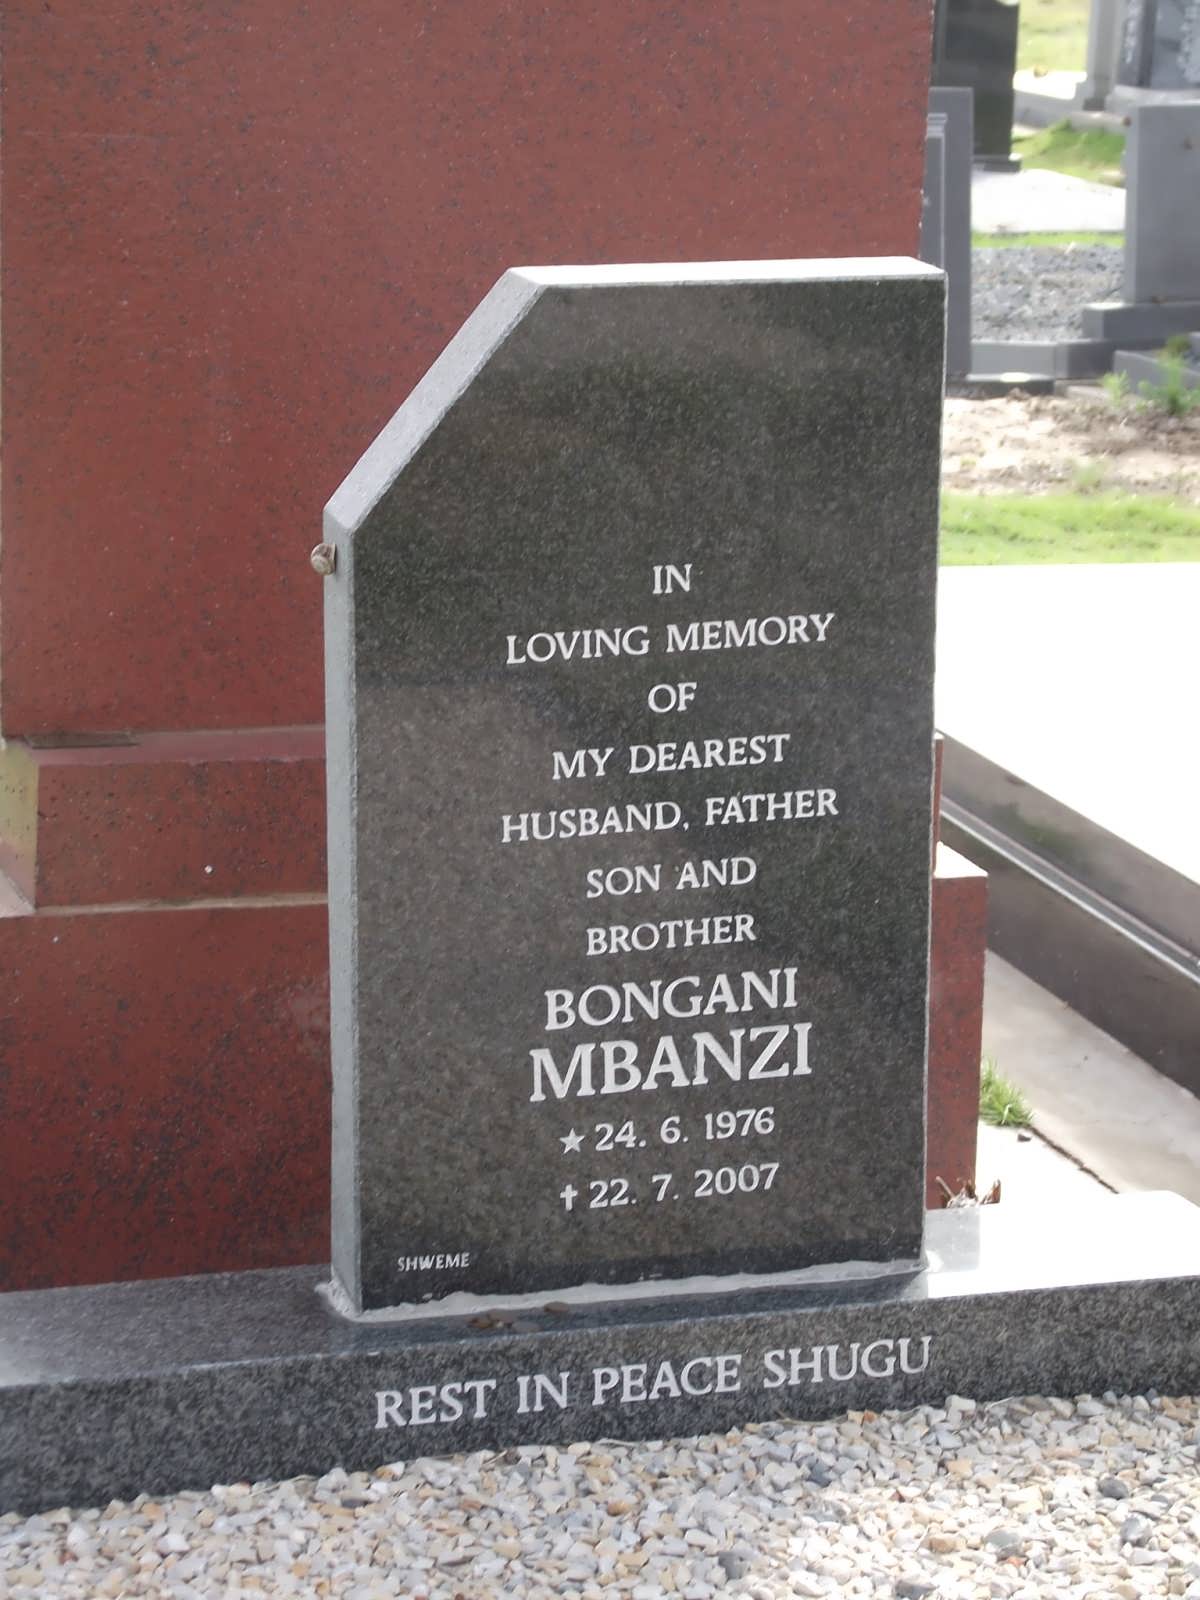 MBANZI Bongani 1976-2007